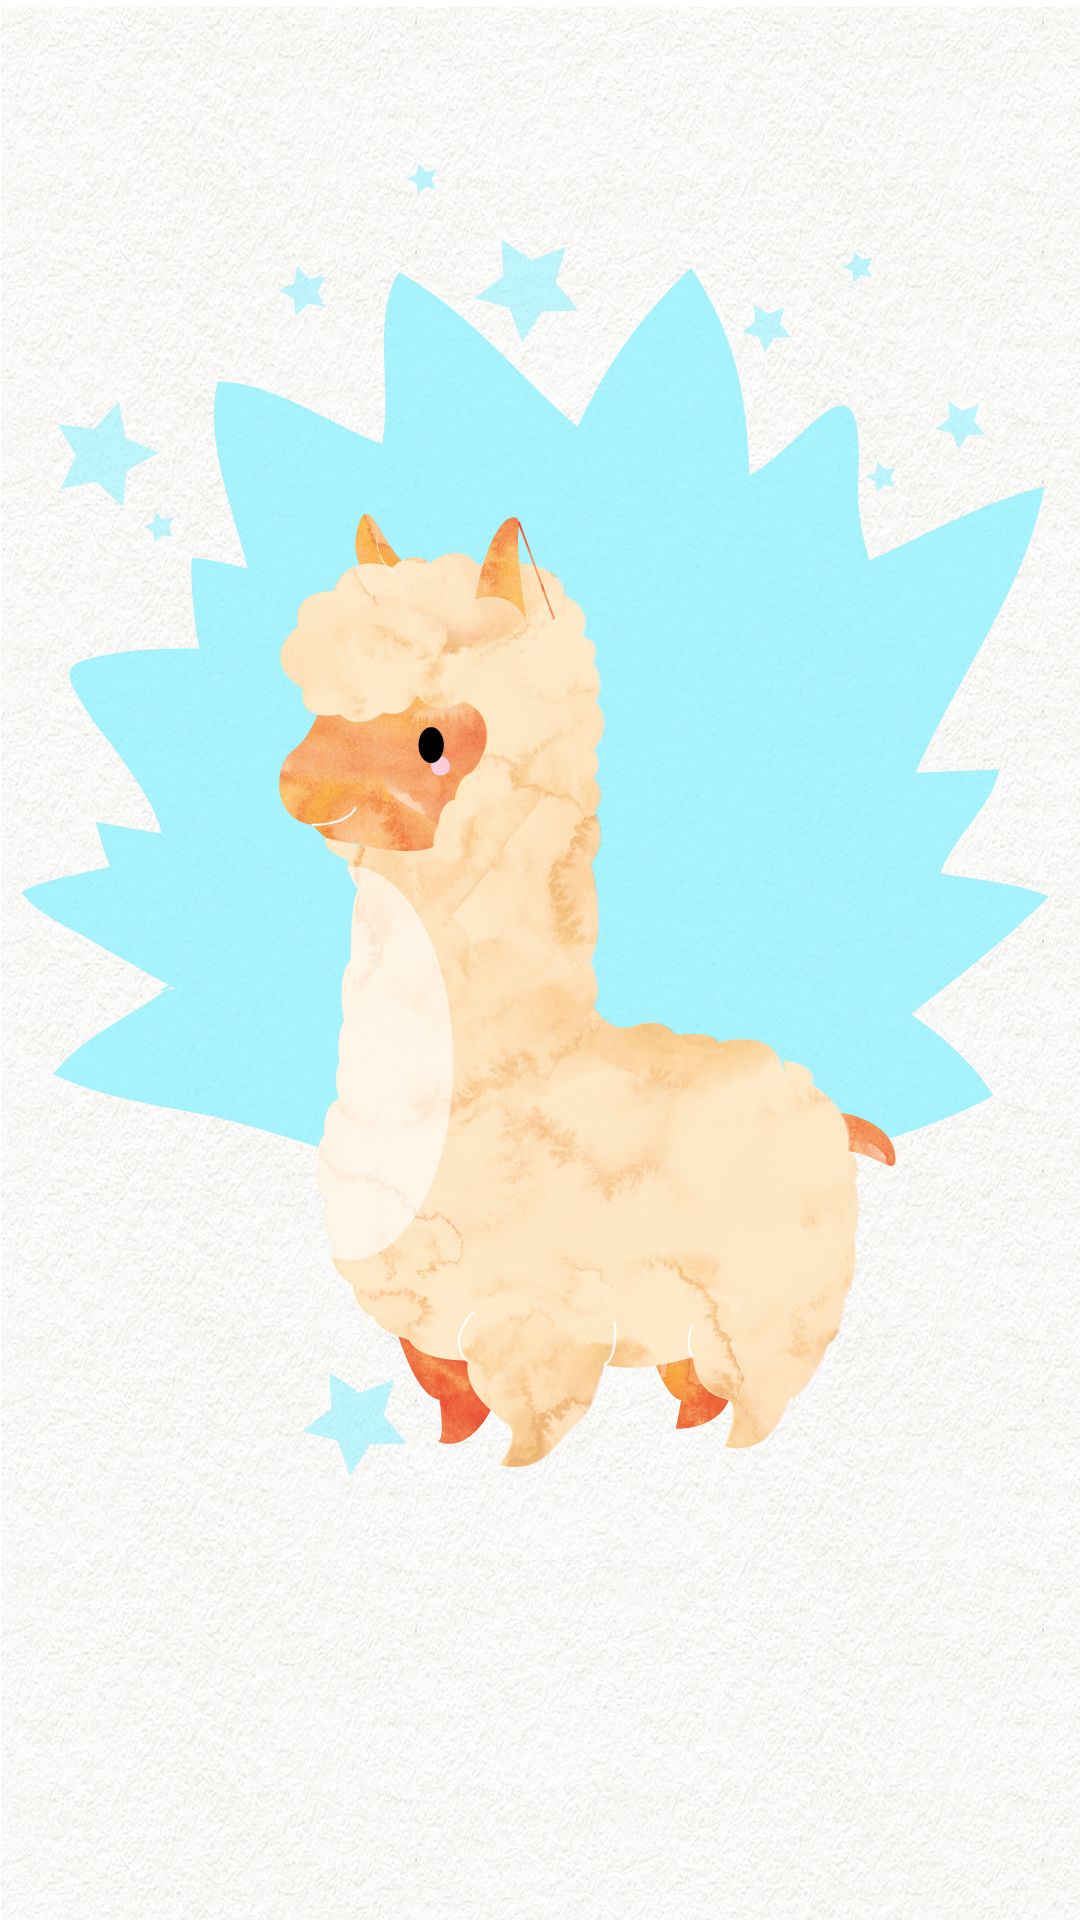 comment wallpaper,llama,camelid,alpaca,illustration,livestock